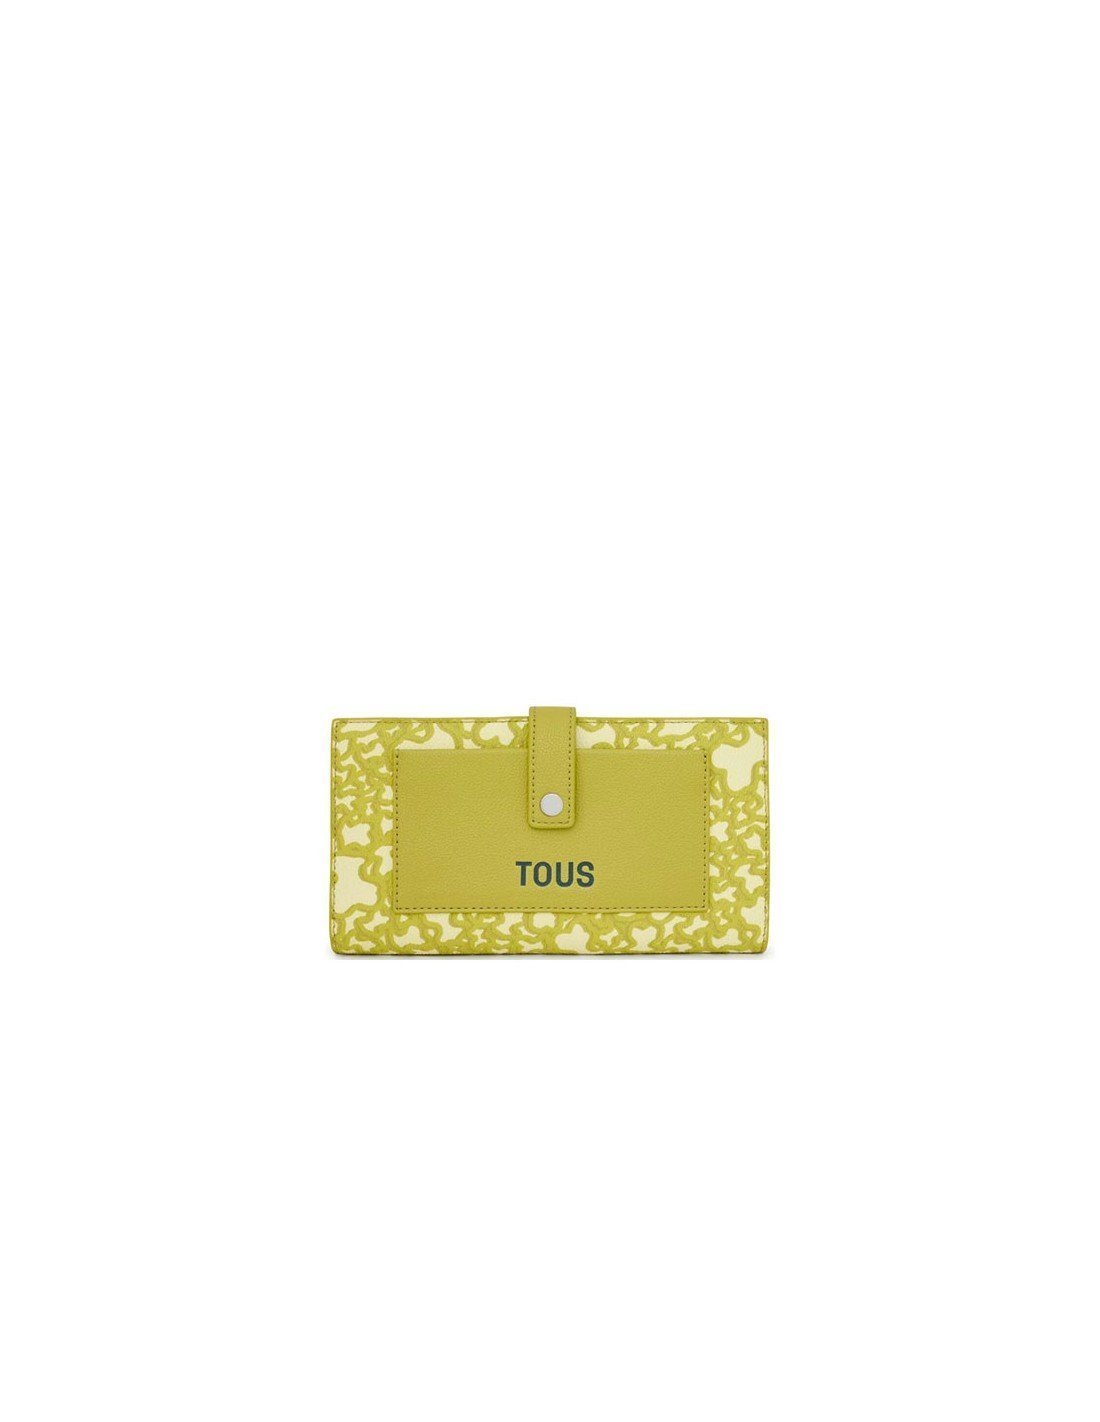 Tous Wallet Pocket Lime Kaos Mini Evolution Wallet